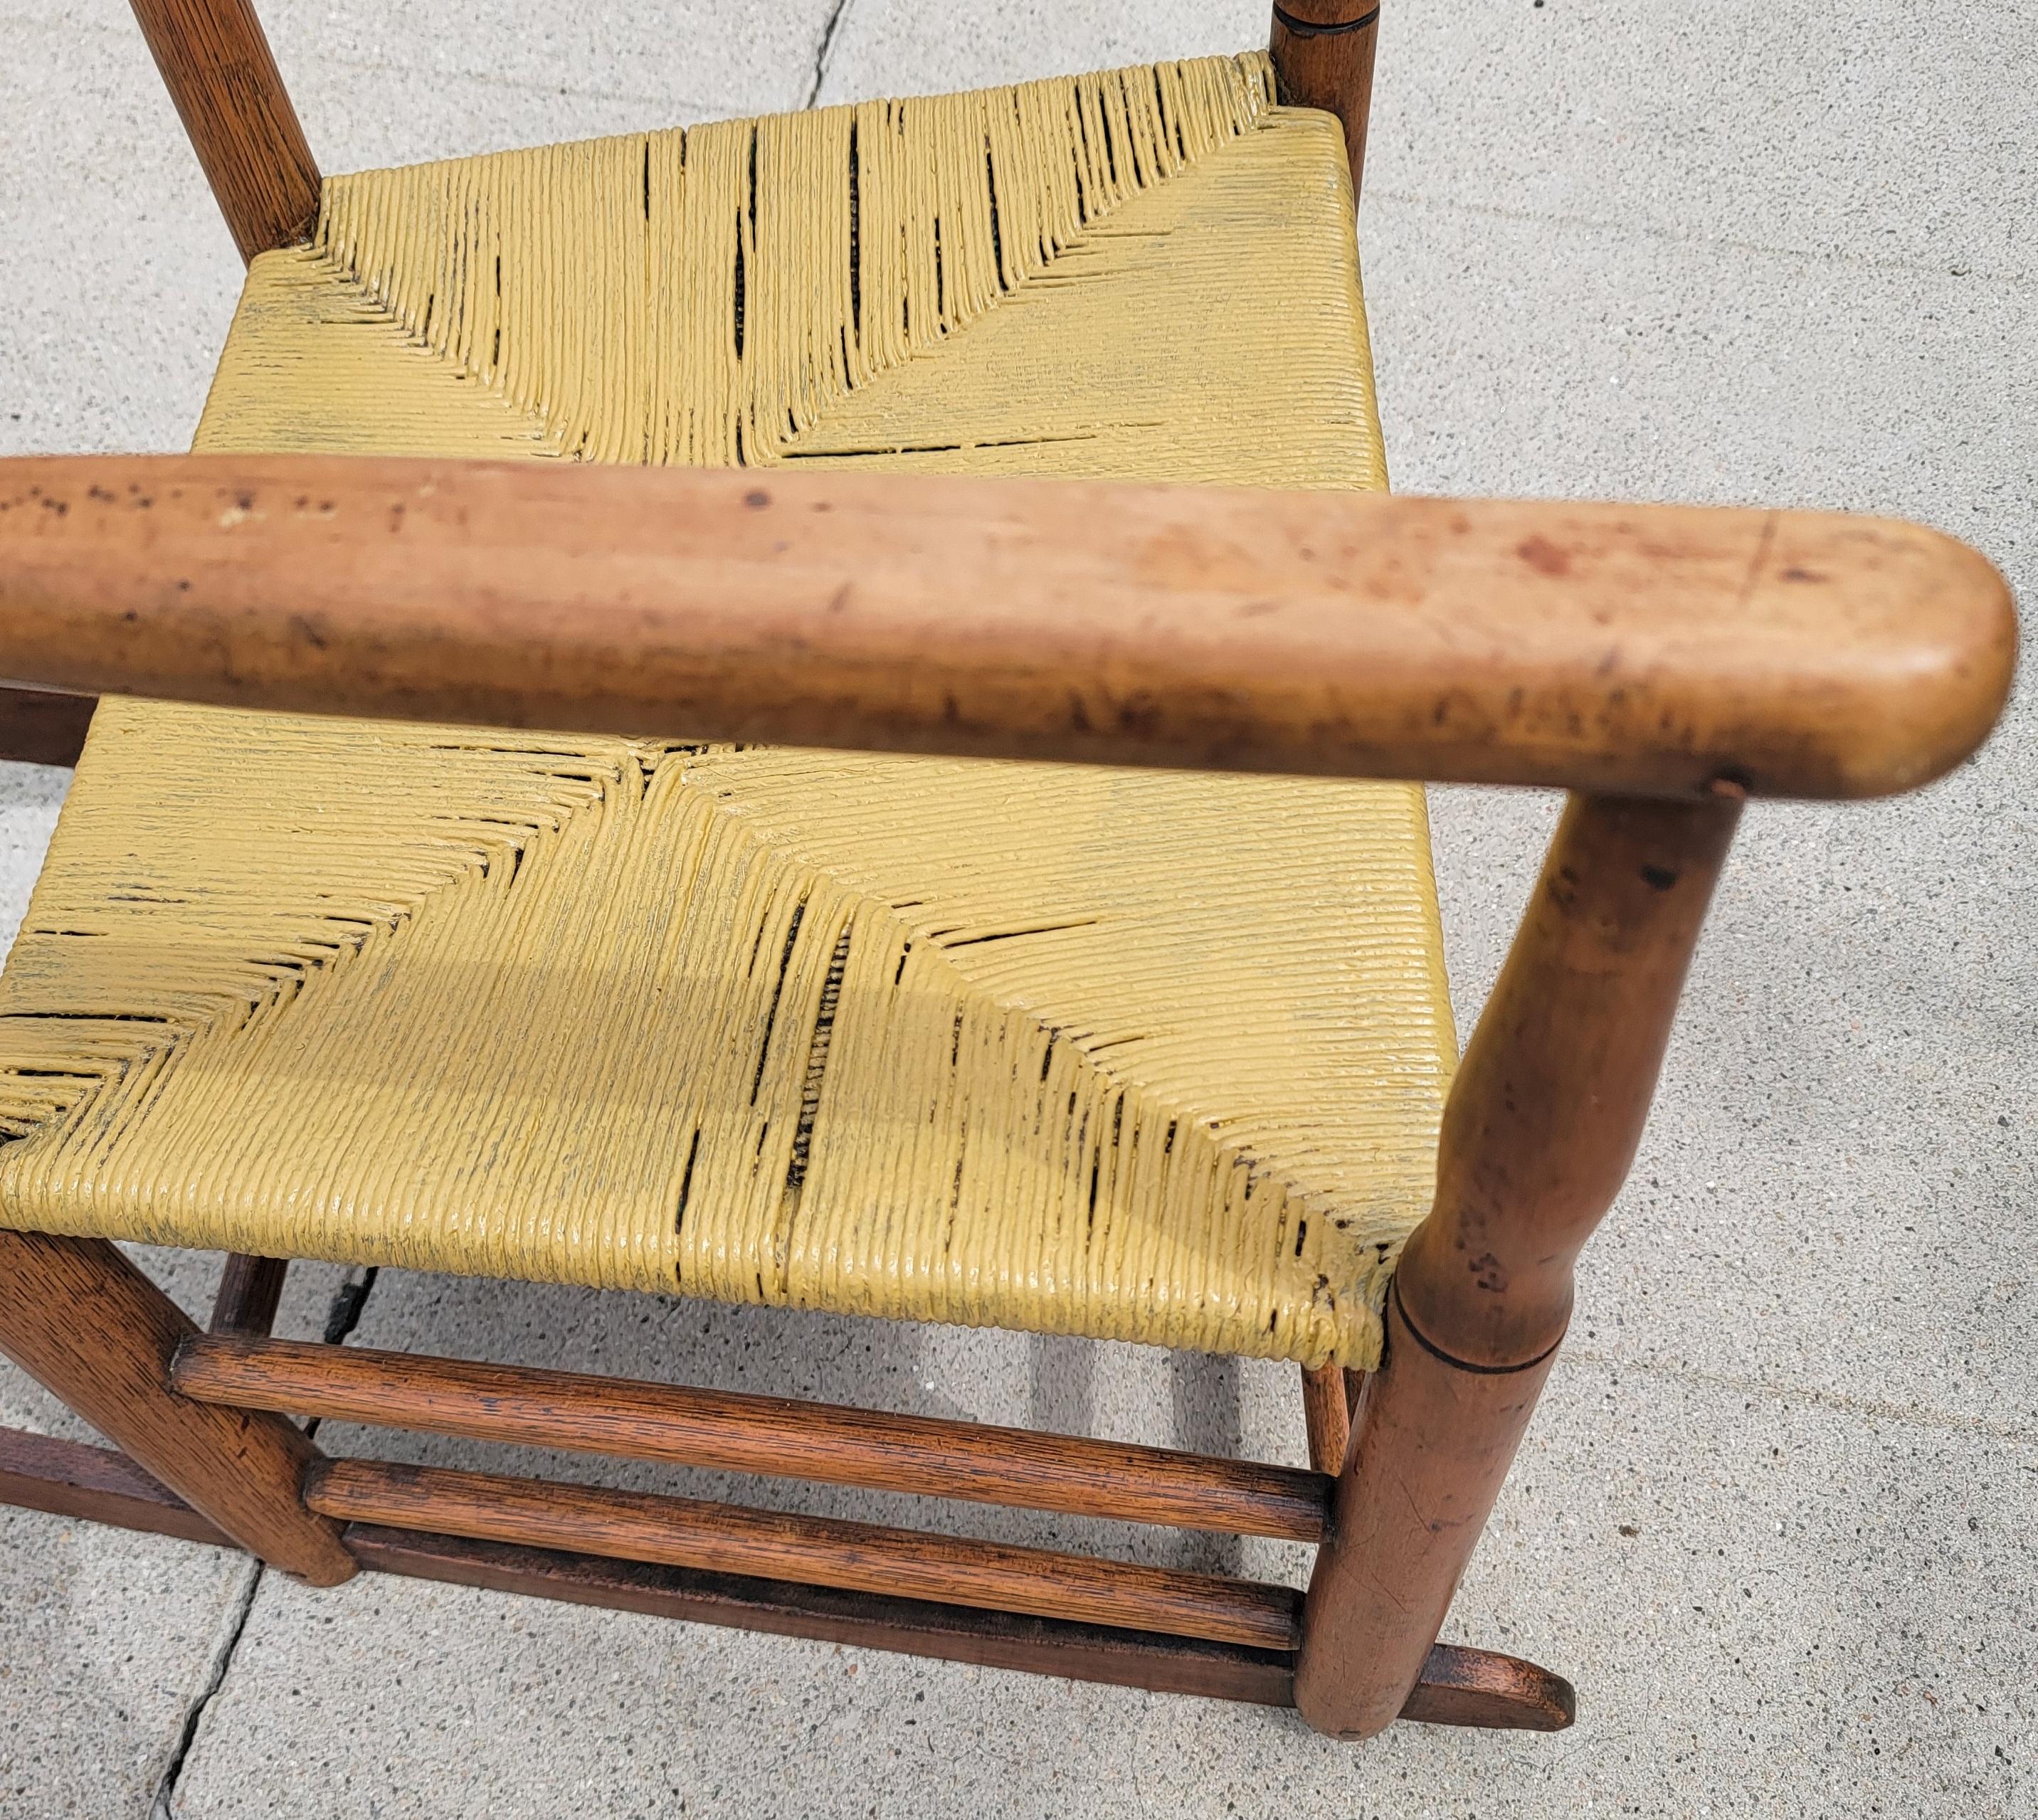 Diese natürliche Kiefer Leiter zurück Schaukelstuhl ist in gutem robusten Zustand mit einem Senf gemalt rush seat.the Stuhl hat eine weiche schöne Patina.